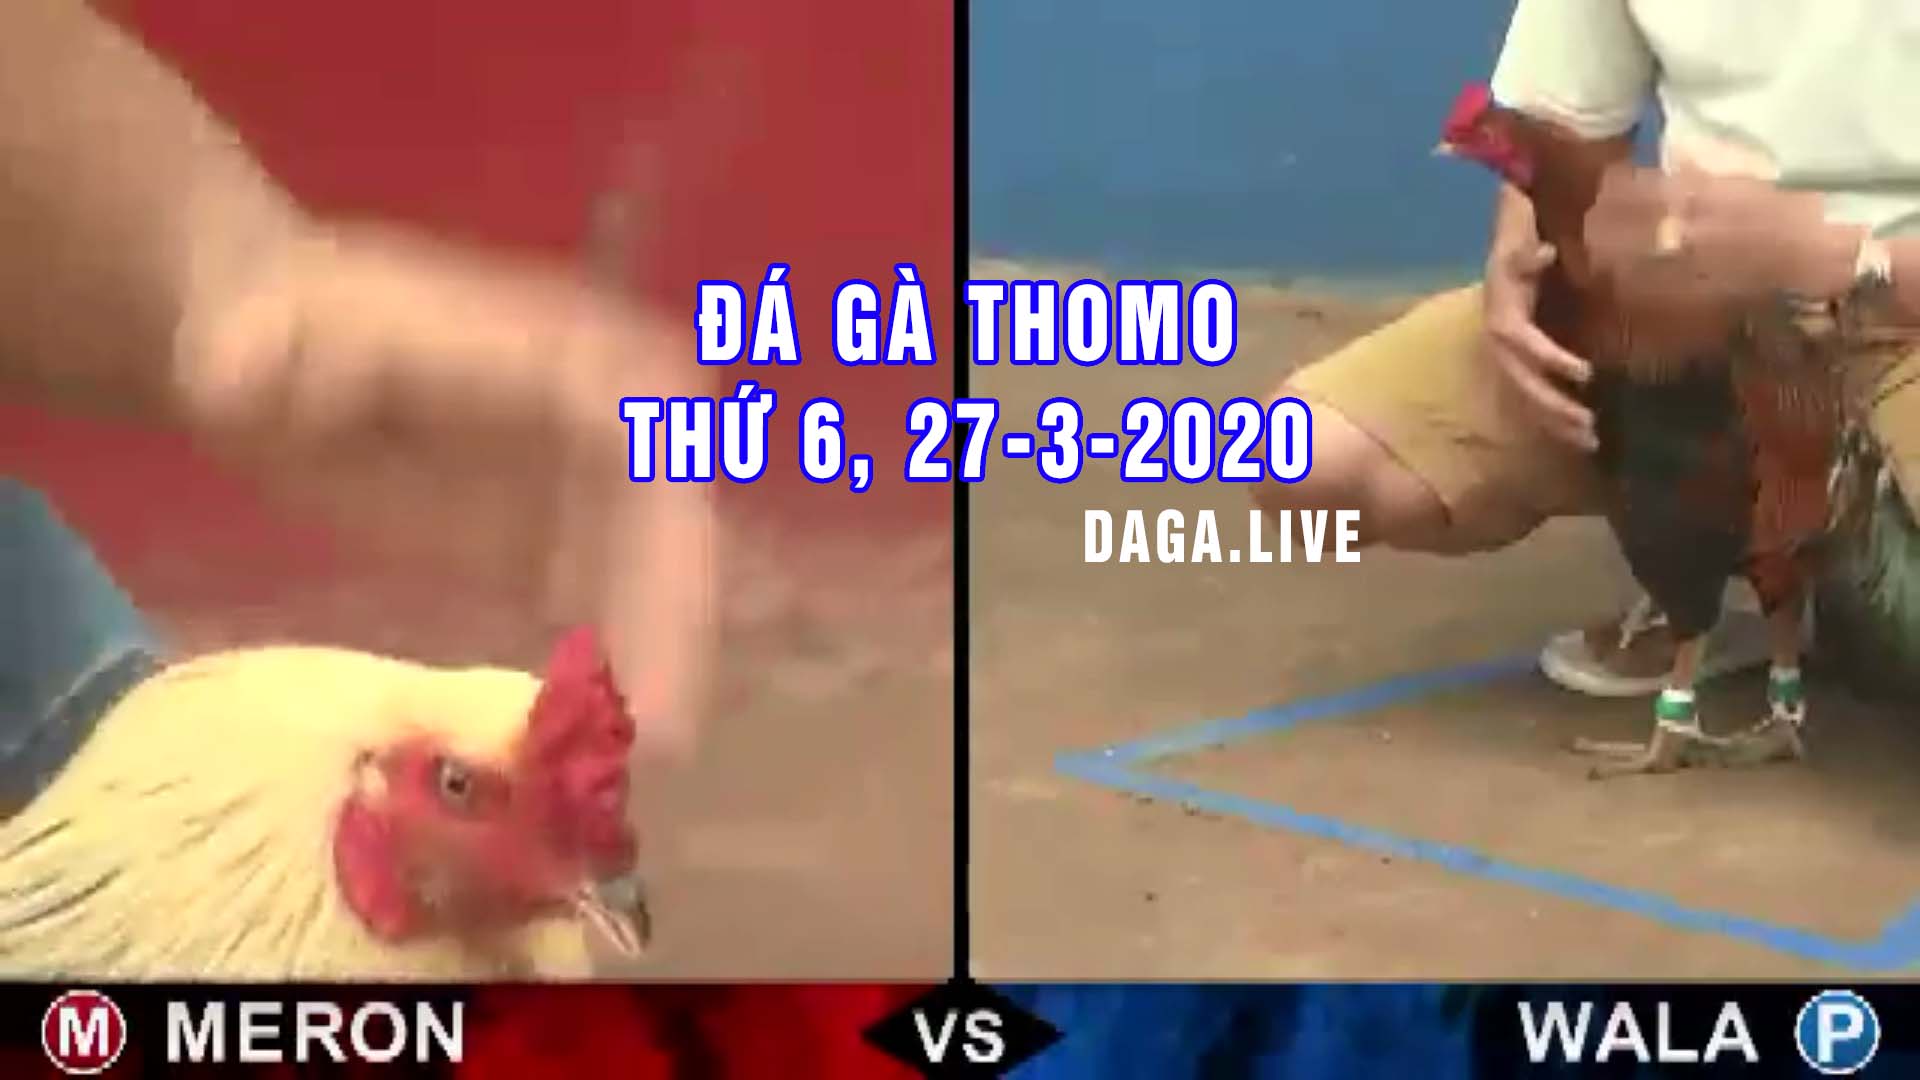 DAGA.LIVE- Đá gà thomo hôm nay, đá gà campuchia, đá gà trực tiếp, đá gà cựa sắt thứ 6 ngày 27-3-2020